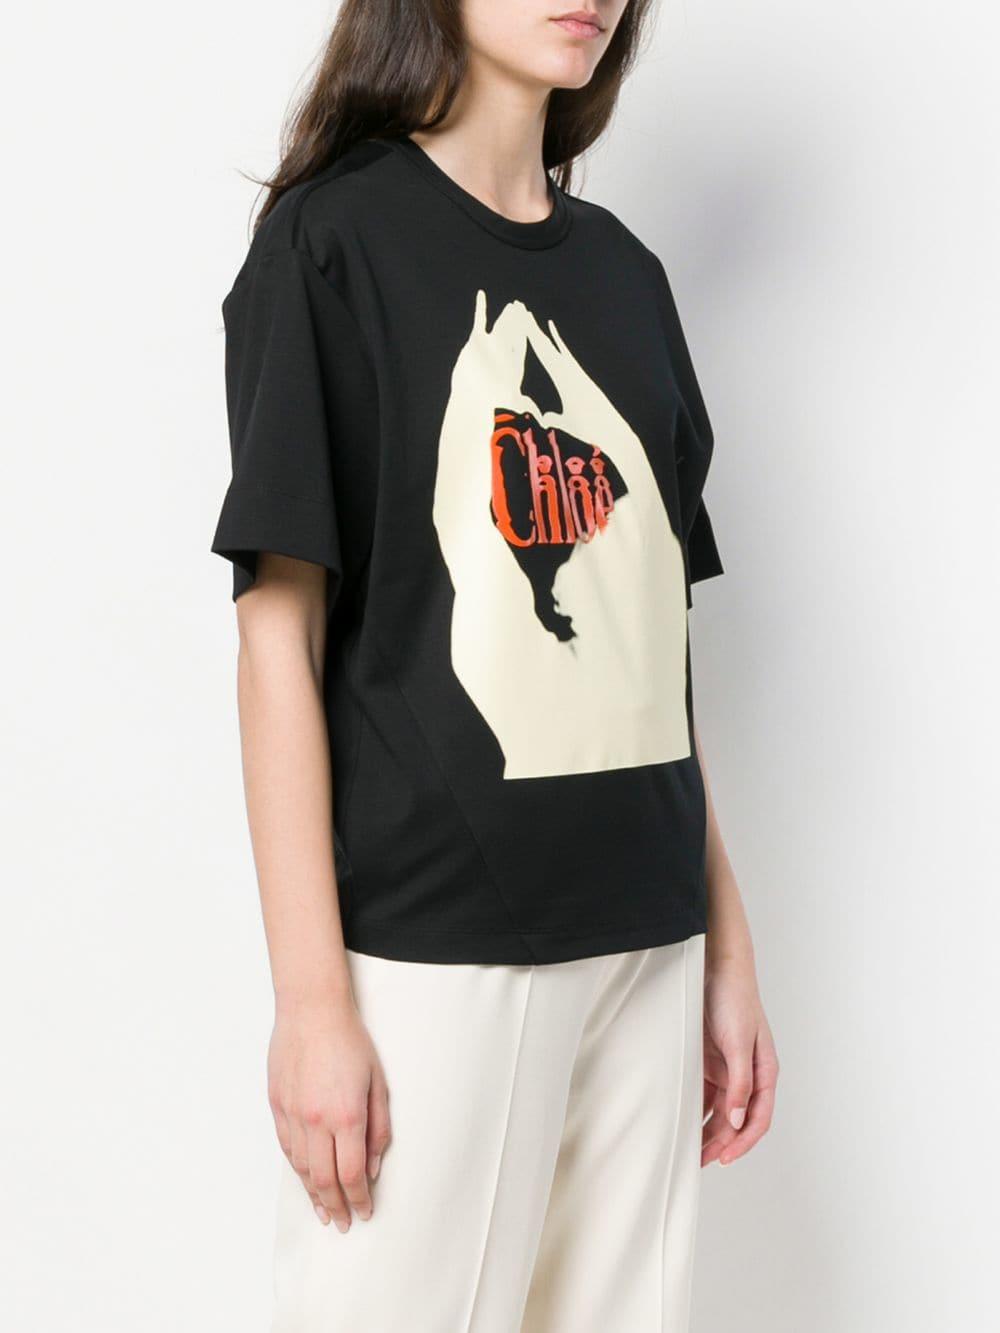 Chloé Logo Print T-shirt in Black - Save 26% - Lyst